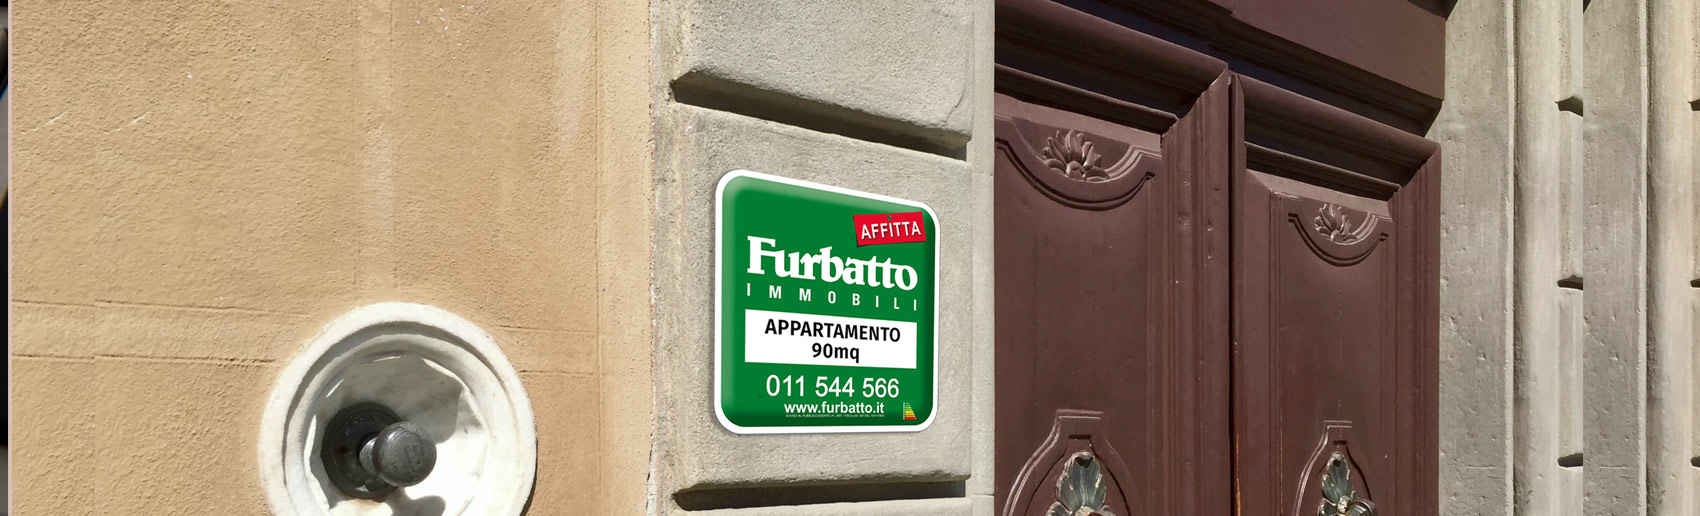 Servizi Immobiliari di Furbatto Immobili - Affitti Torino